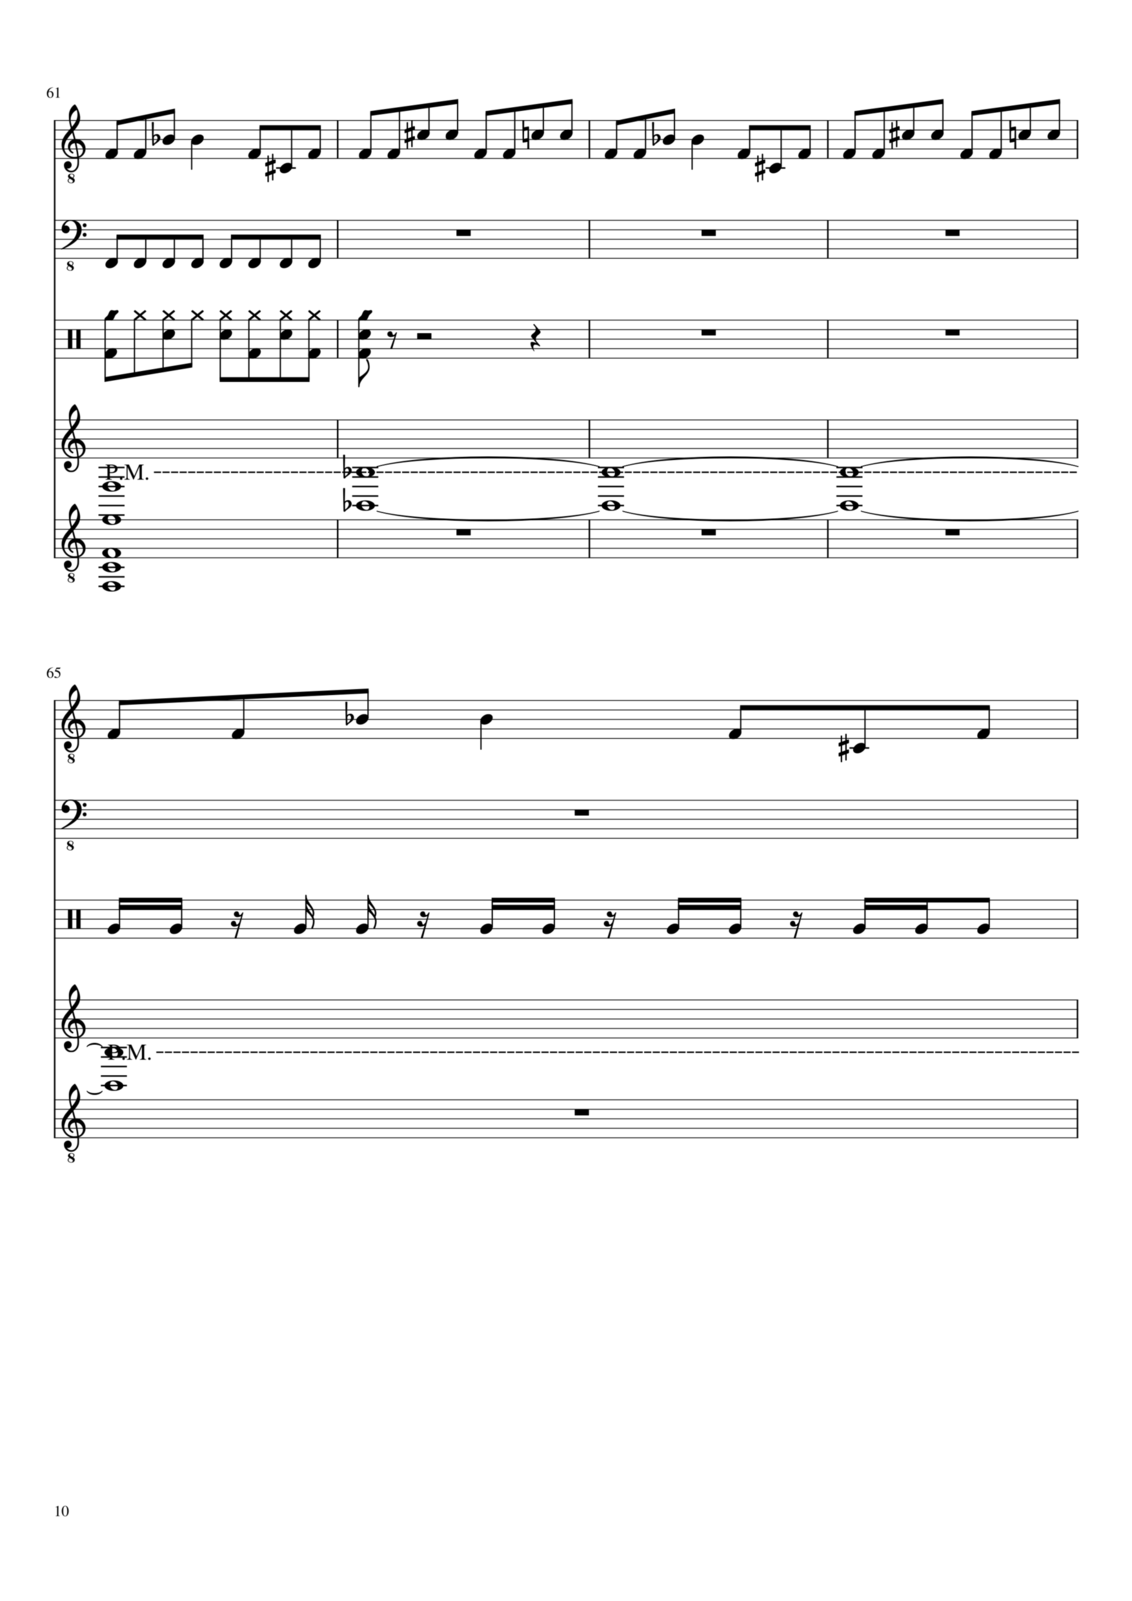 Vechnaya prizrachnaya vstrechnaya slide, Image 10